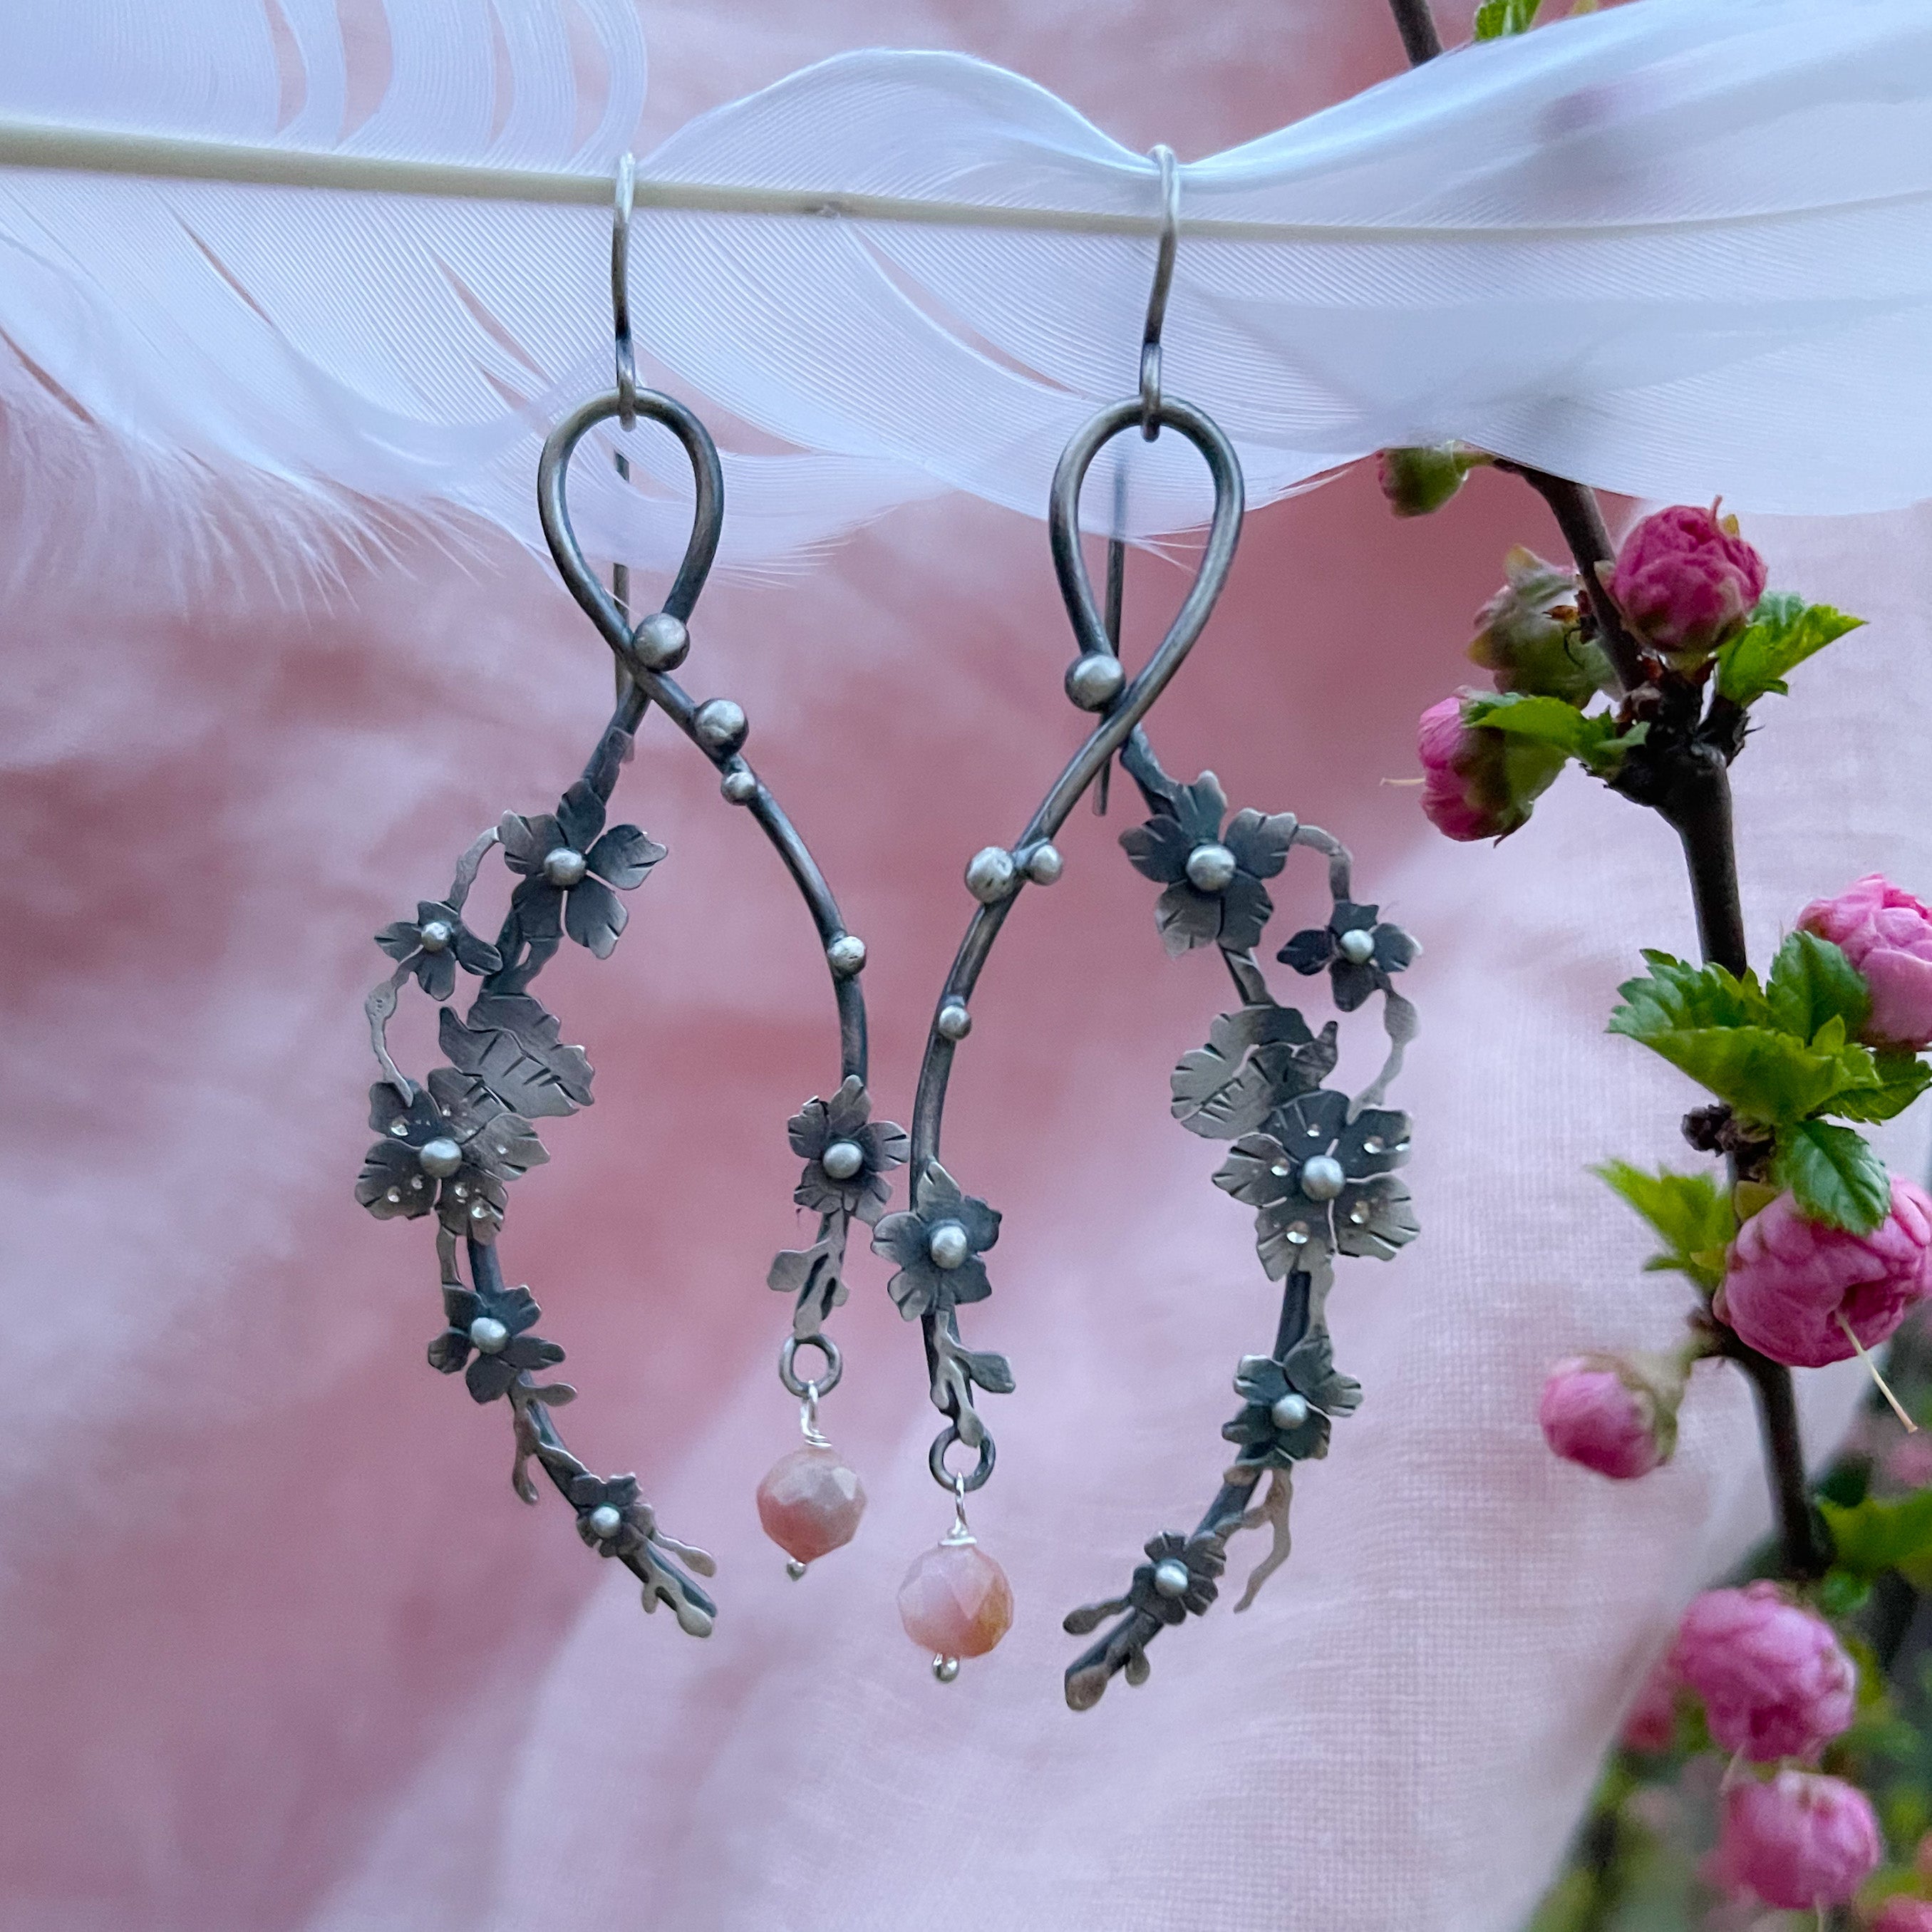 The Sakura Branch Earrings